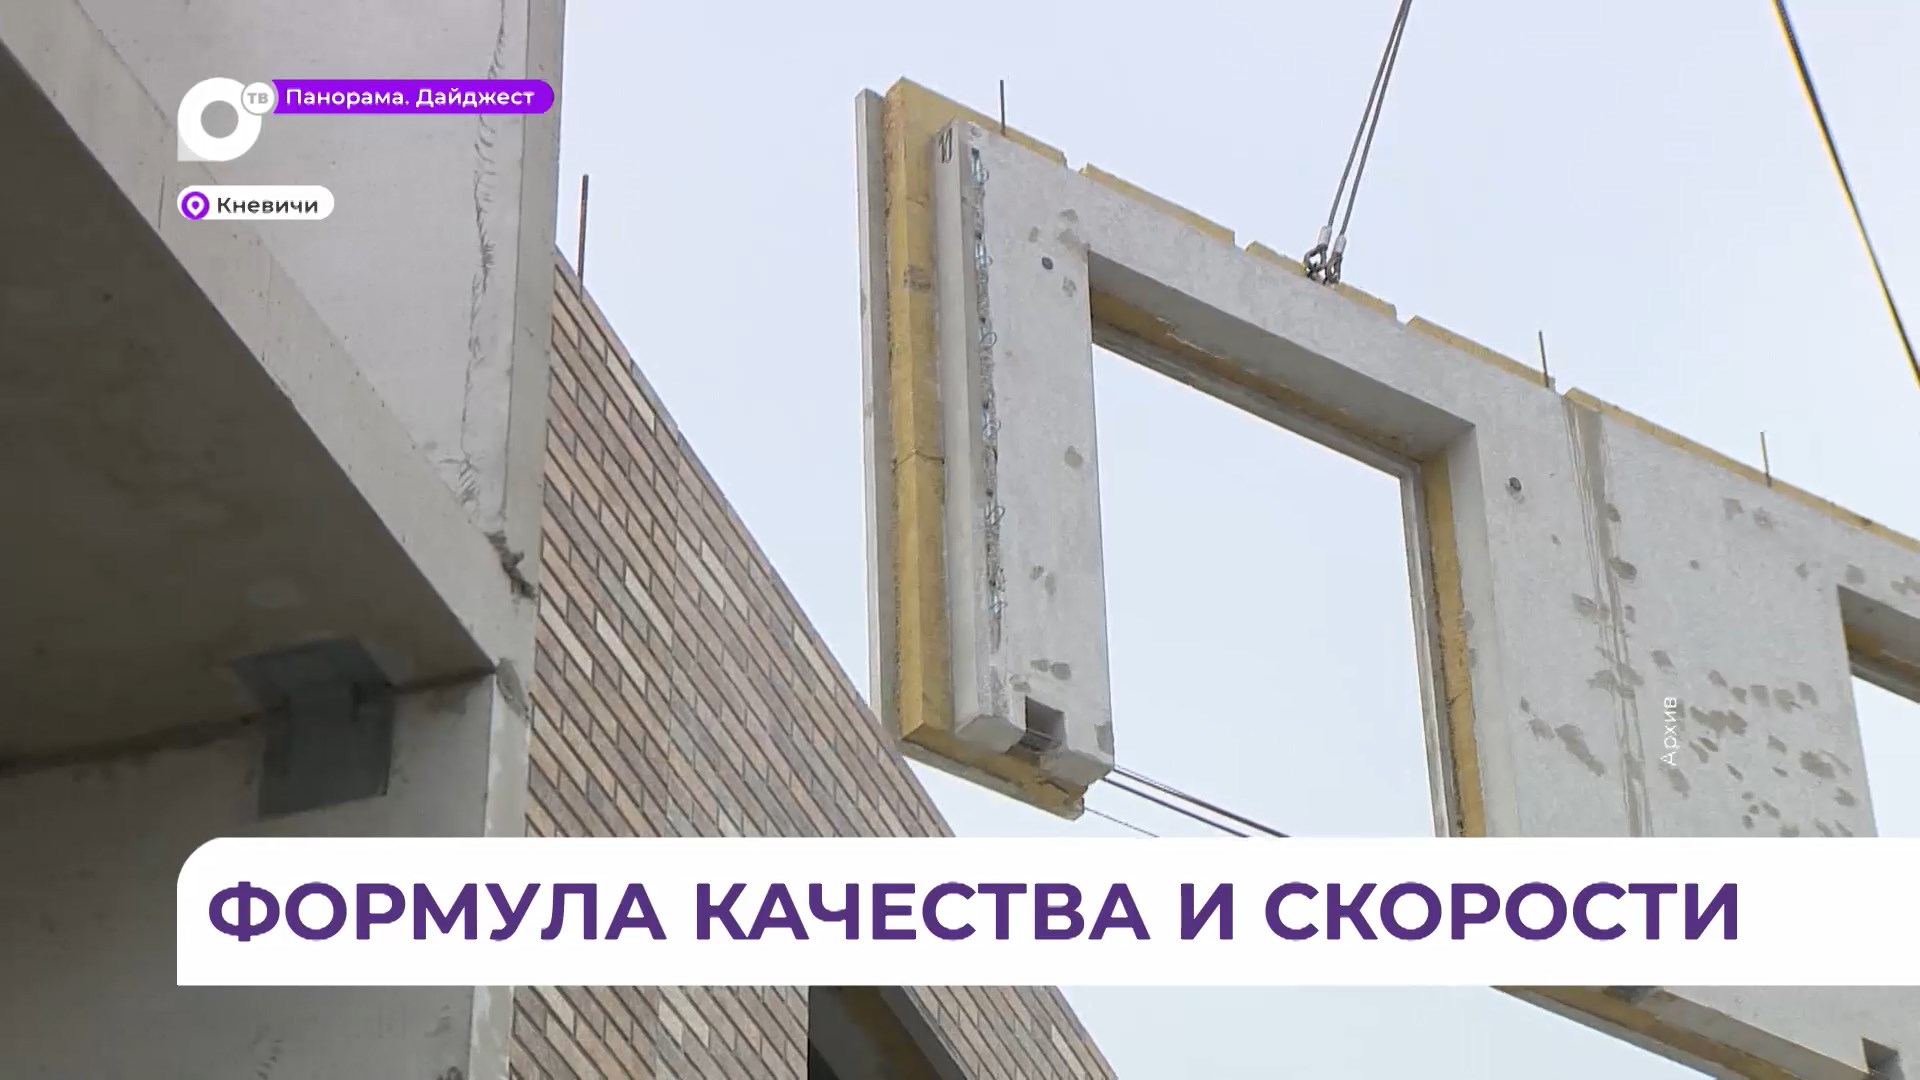 Первый за последние полвека новострой в Кневичах возвели в рекордные сроки